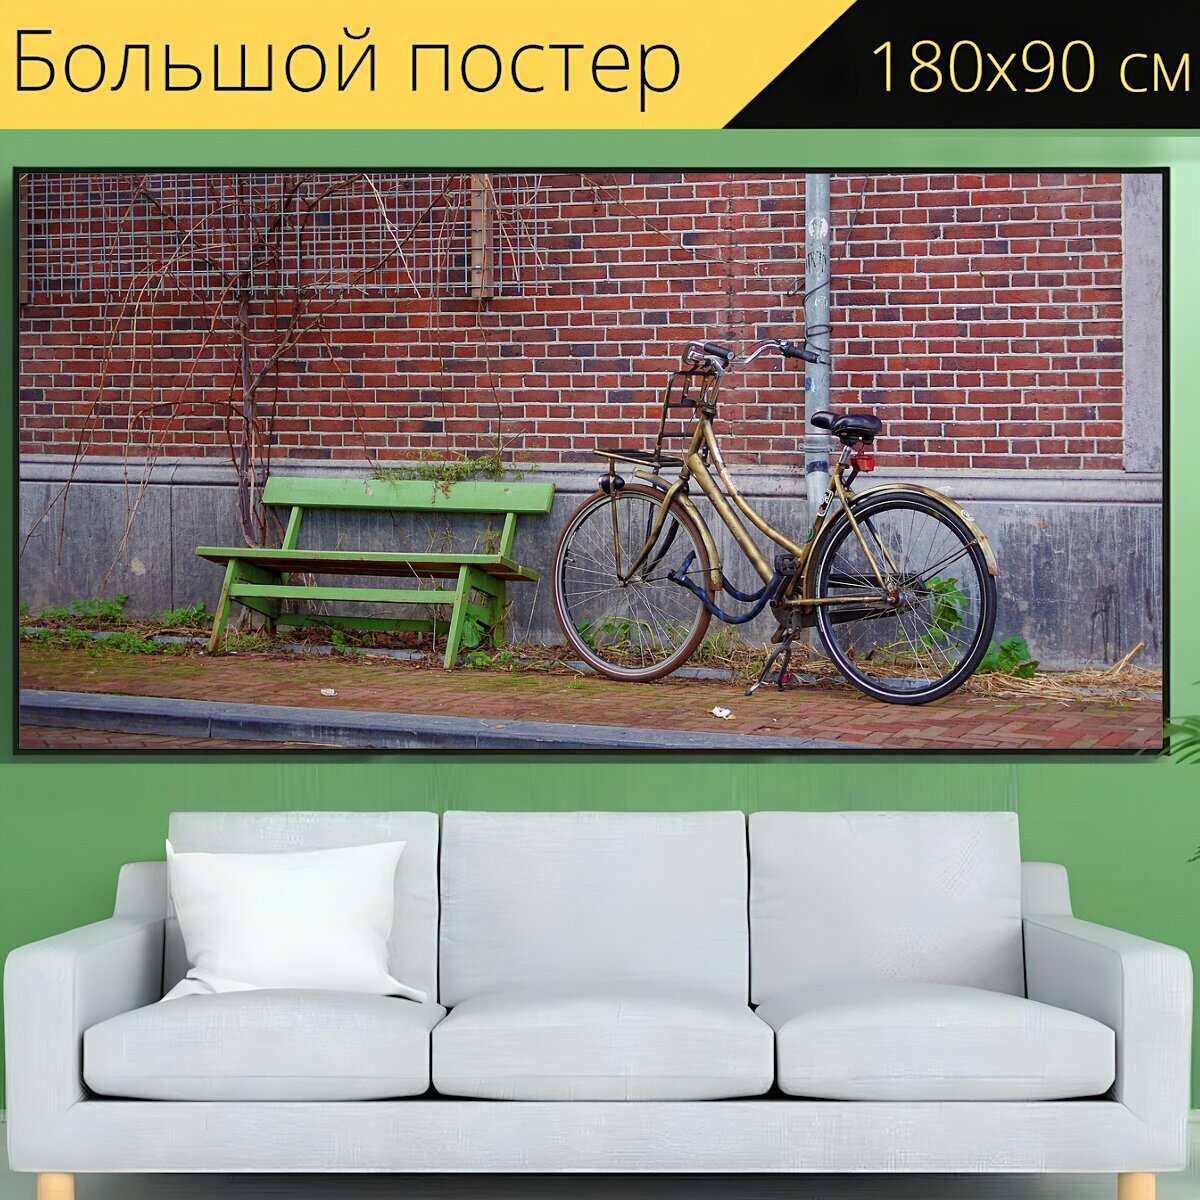 Большой постер "Велосипед, улица, город" 180 x 90 см. для интерьера